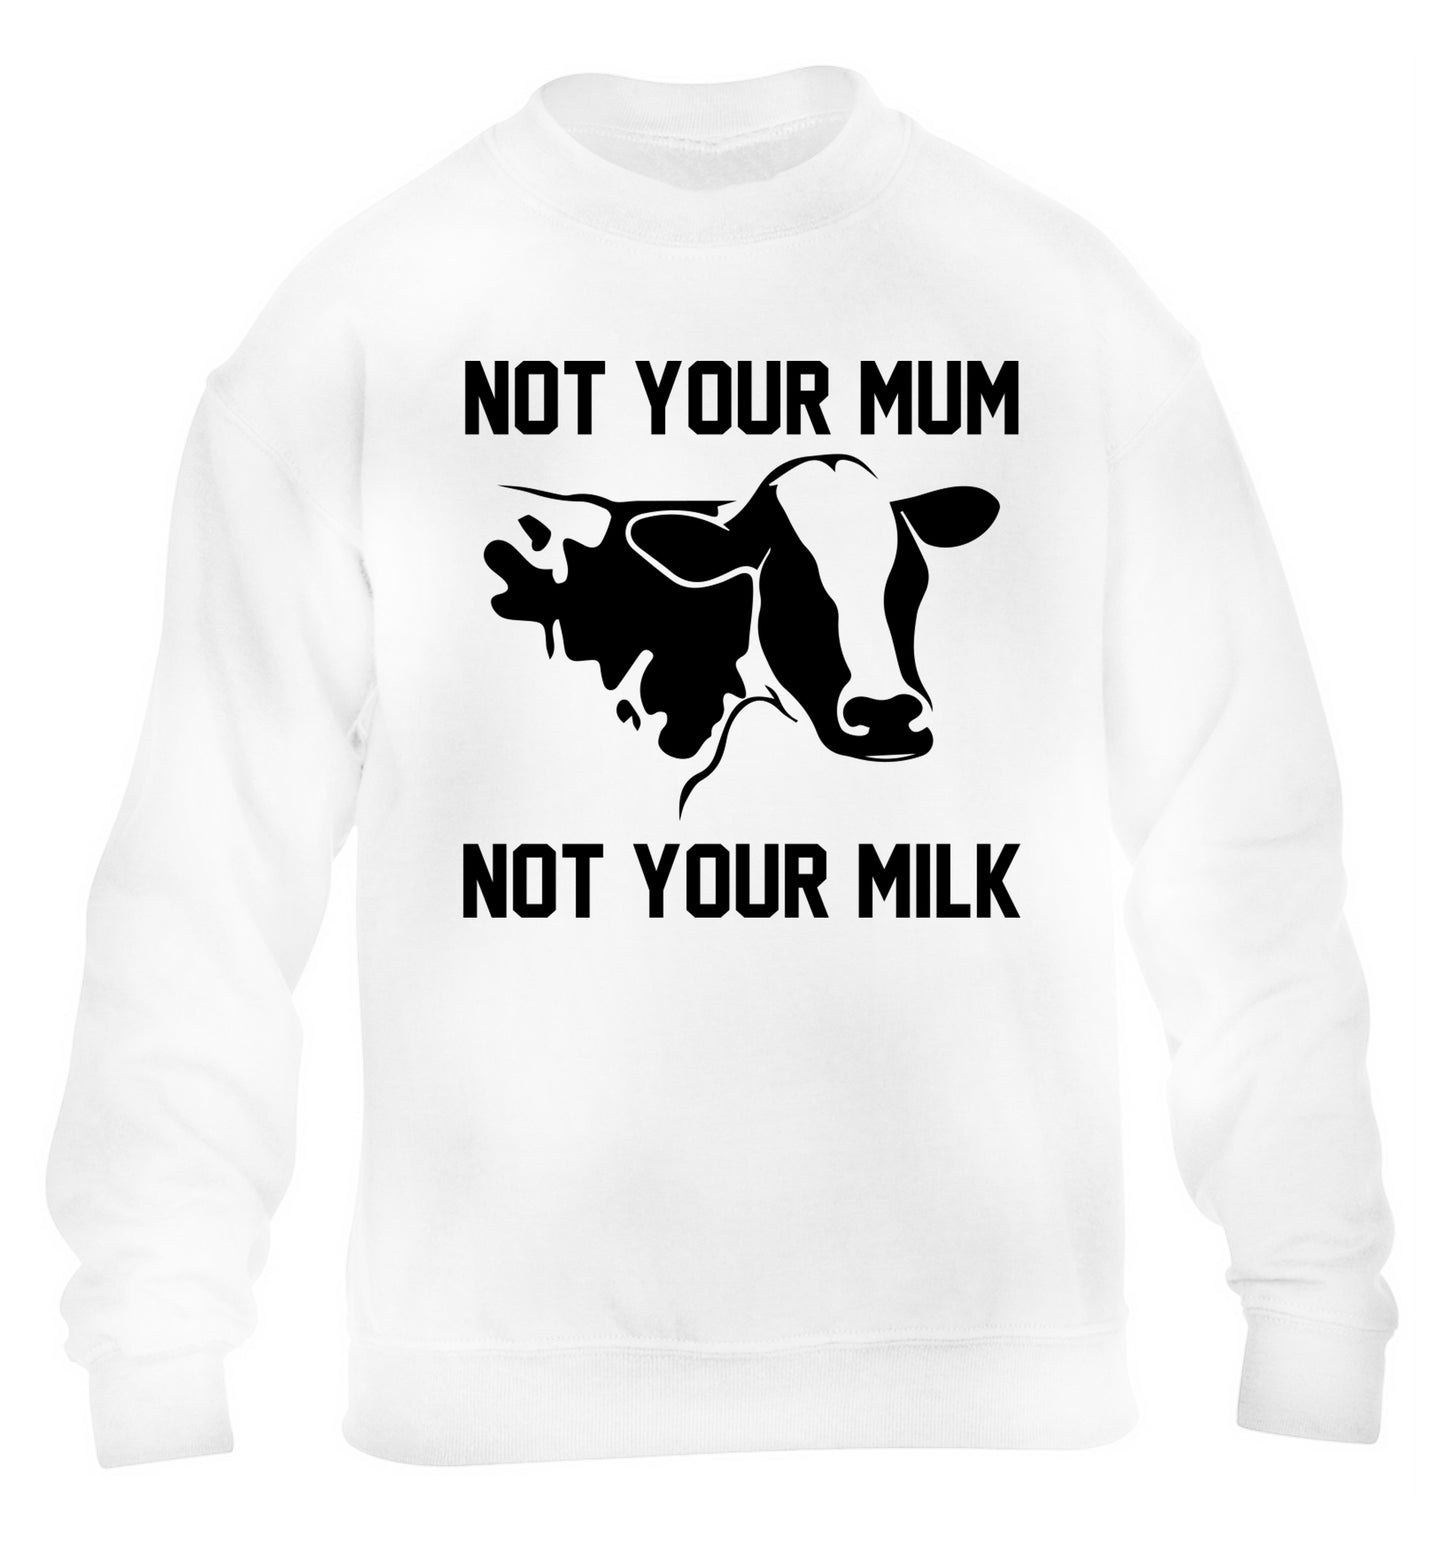 Not your mum not your milk children's white sweater 12-14 Years